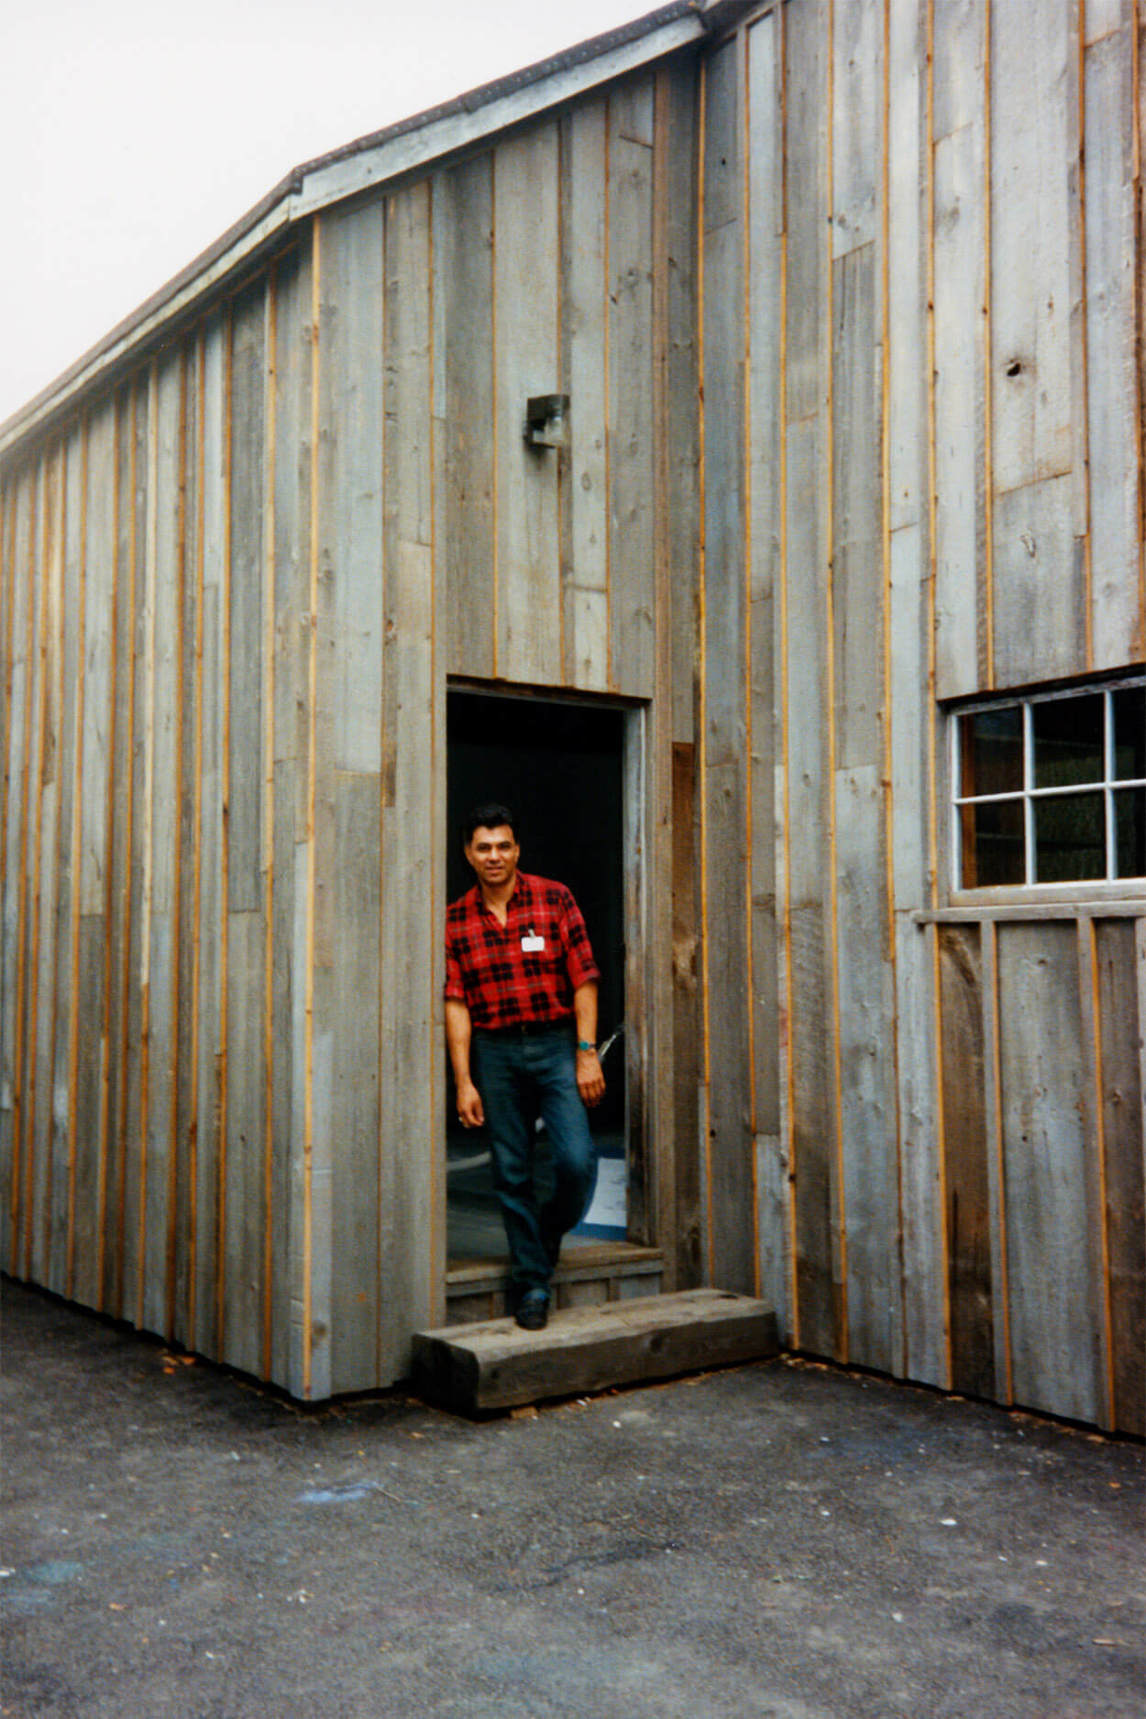 Robert Houle in the doorway of Tom Thomson’s shack